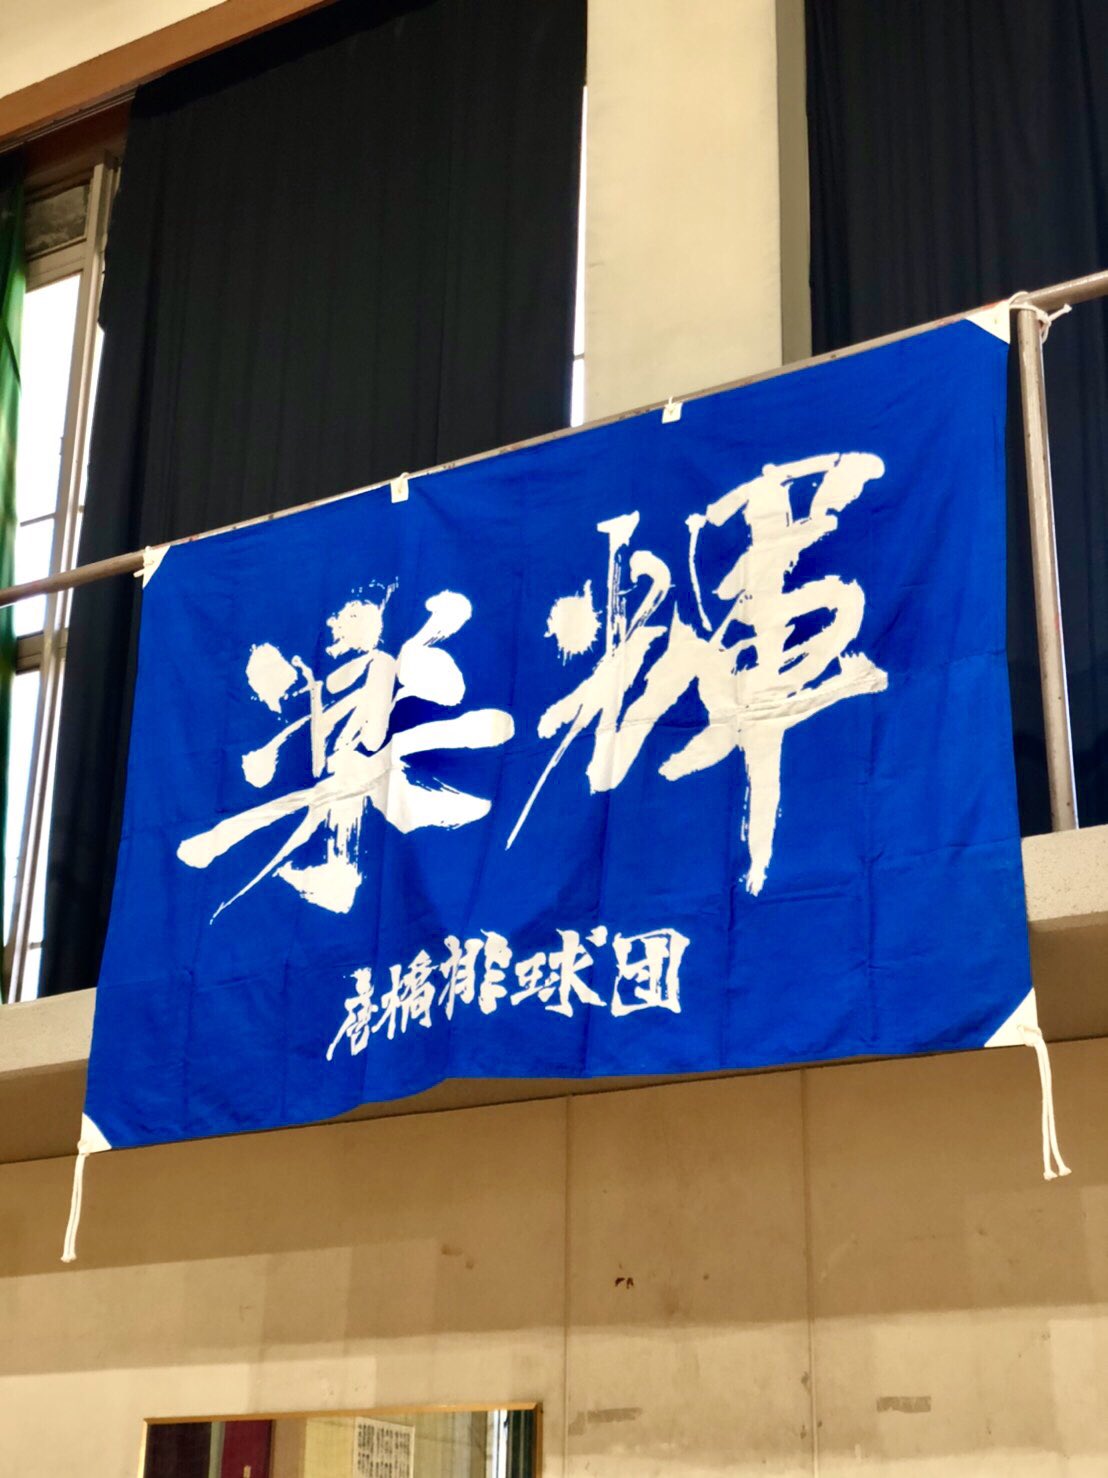 Twitter 上的 Hiloki Tanaka 京都市南区の小学生対象のバレーボールクラブチーム 唐橋排球団の横断幕の文字を書かせていただきました 楽輝 ラッキー 楽しく輝いてバレーボールをするという意味だそうです これから先 何十年も使っていただけますように